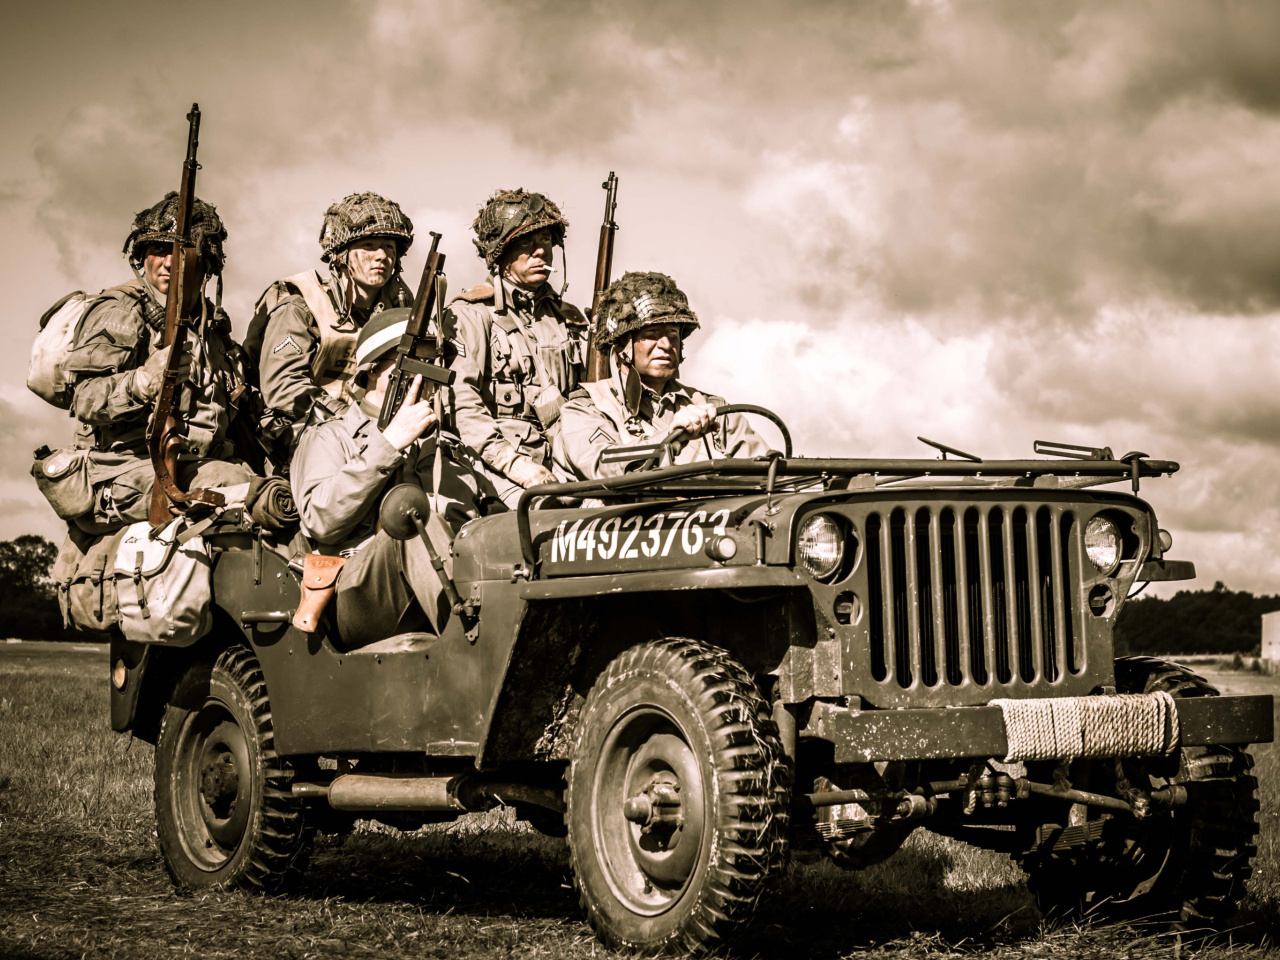 Обои Soldiers on Jeep 1280x960